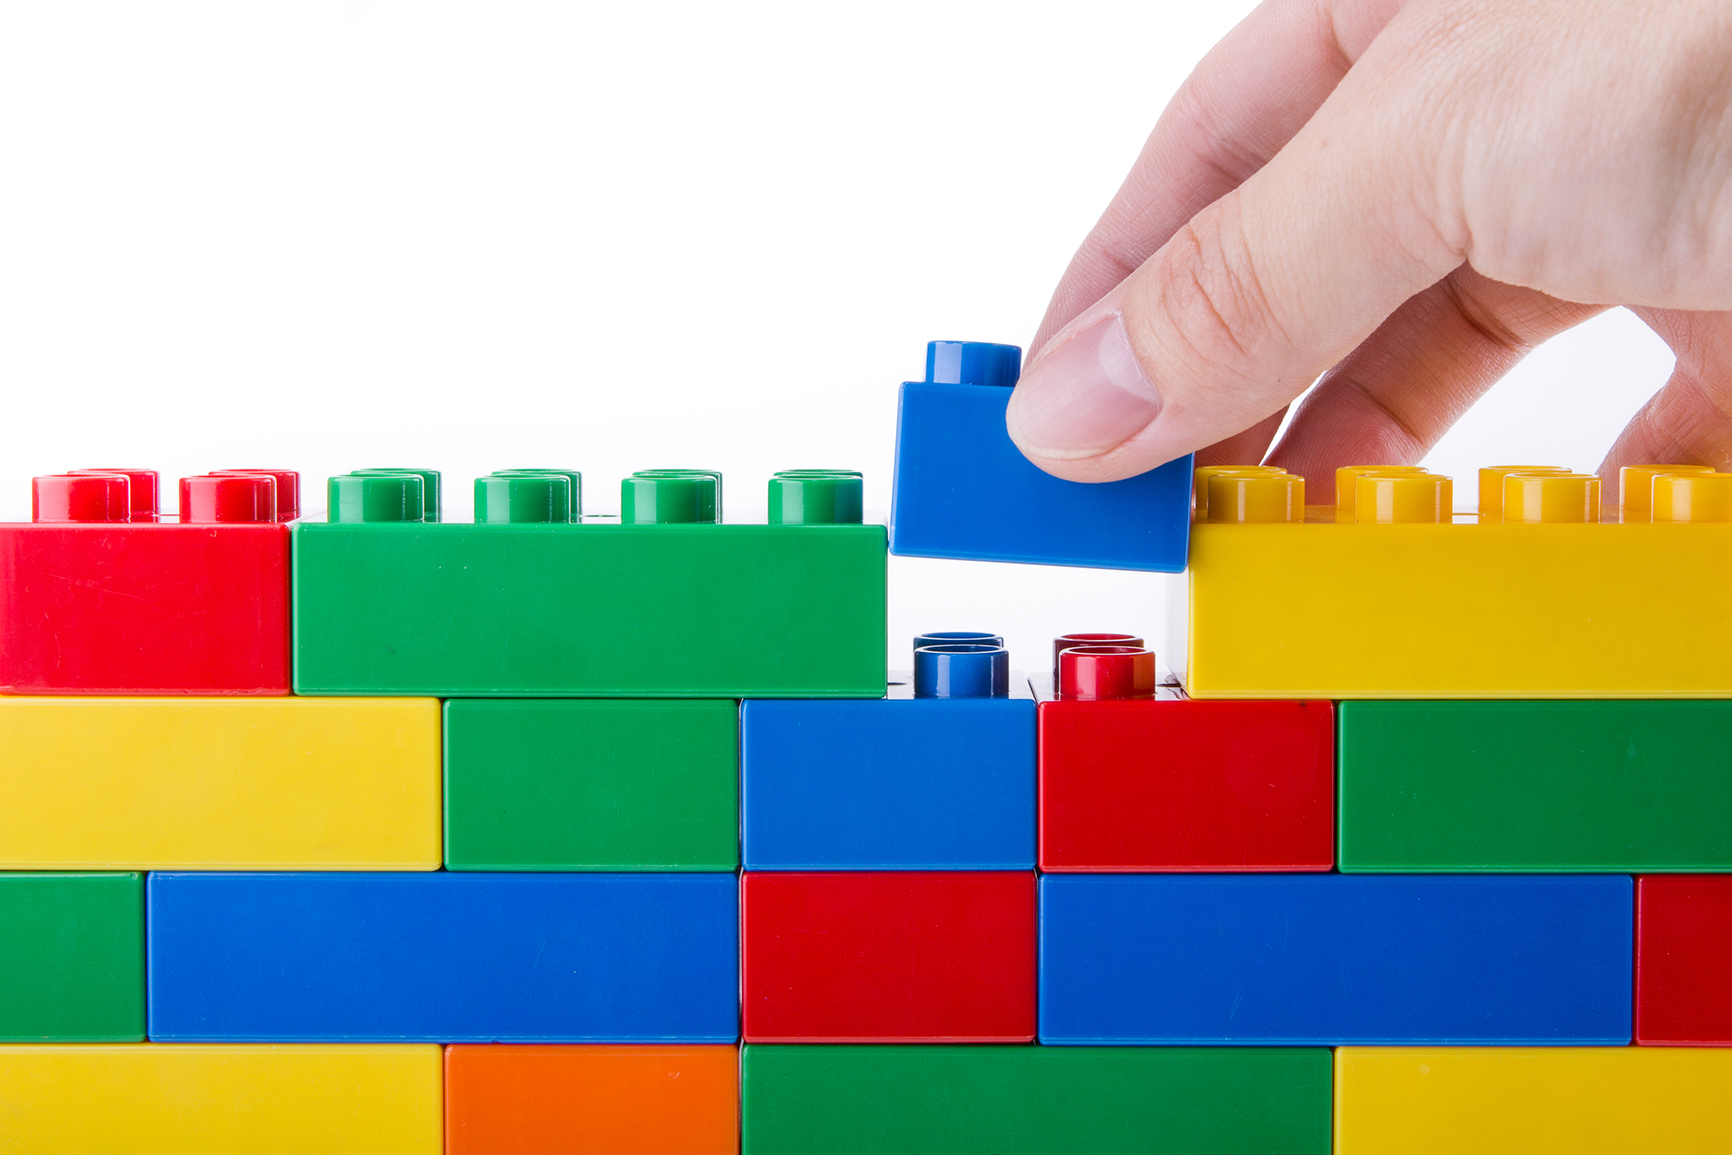 Injeção de Dependências é semelhante a montar peças de lego.